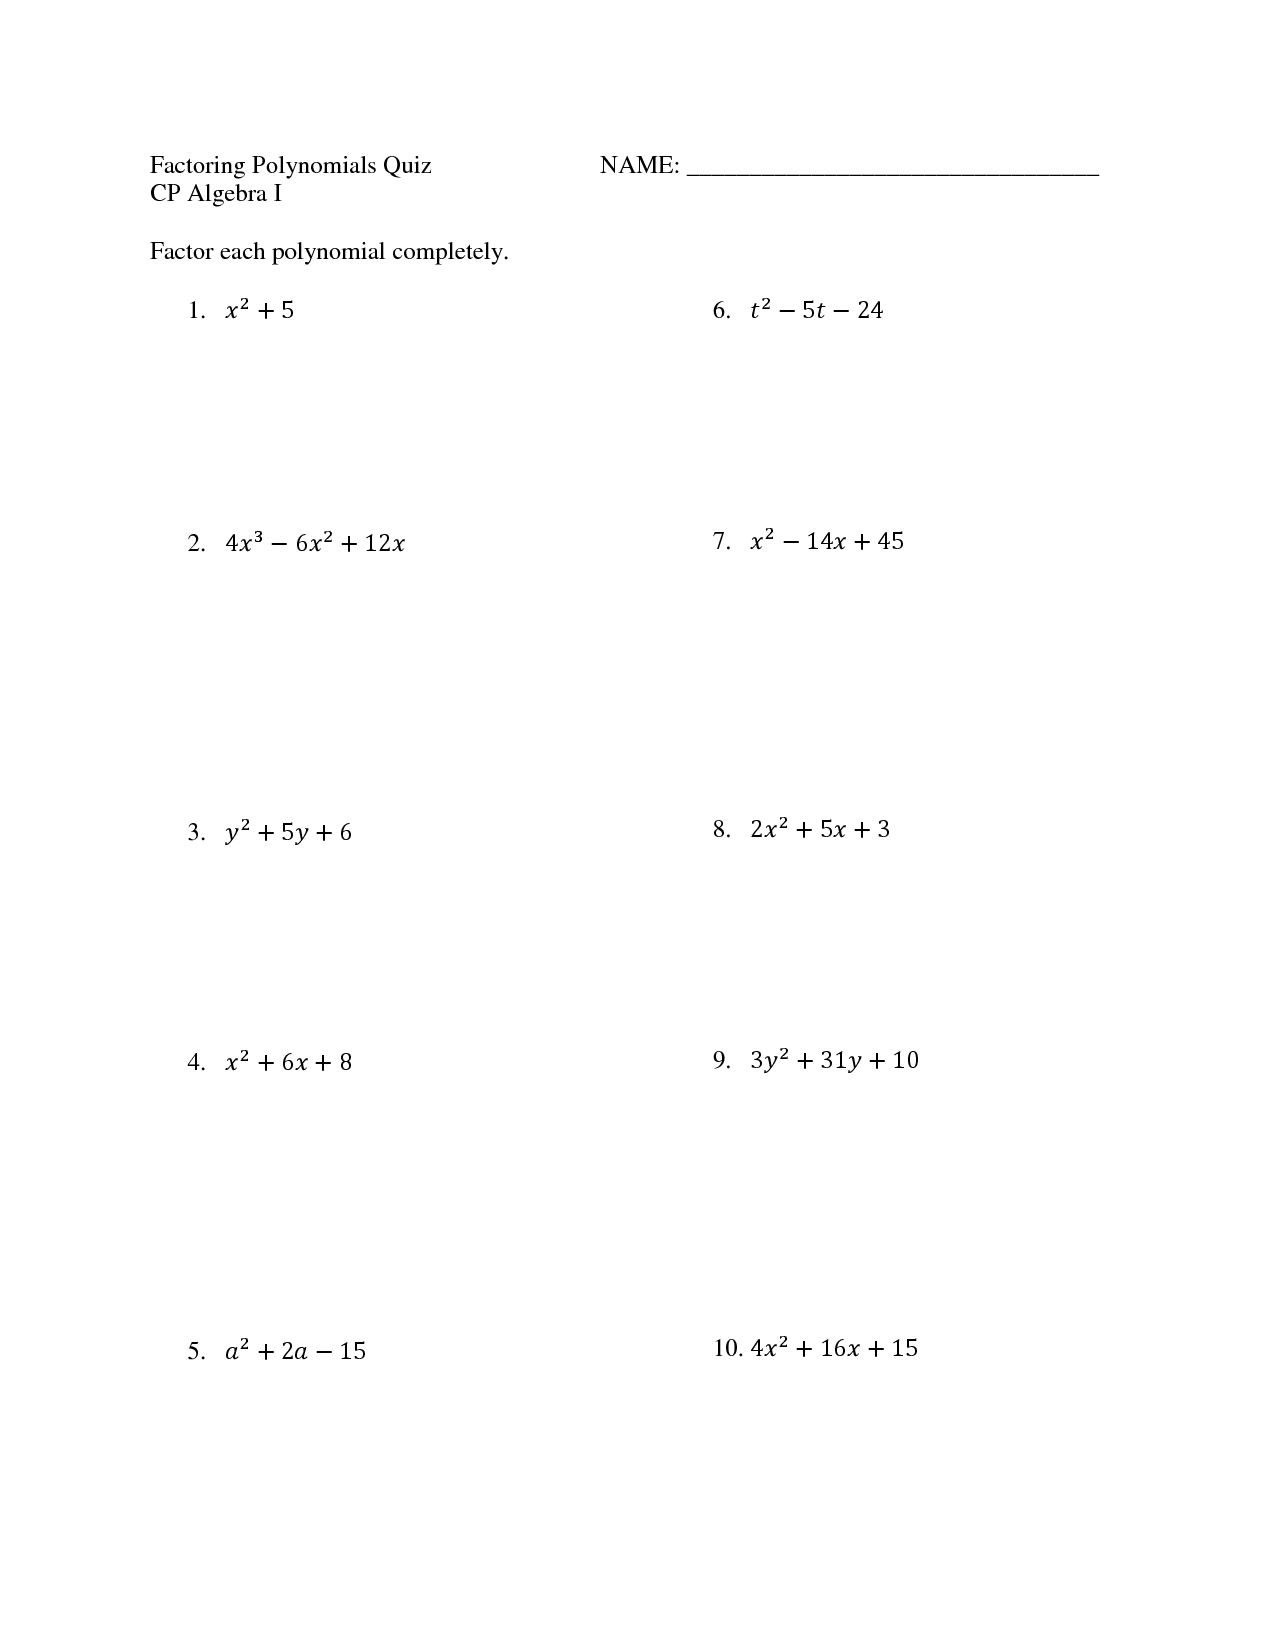 Factoring Polynomials Quiz Image